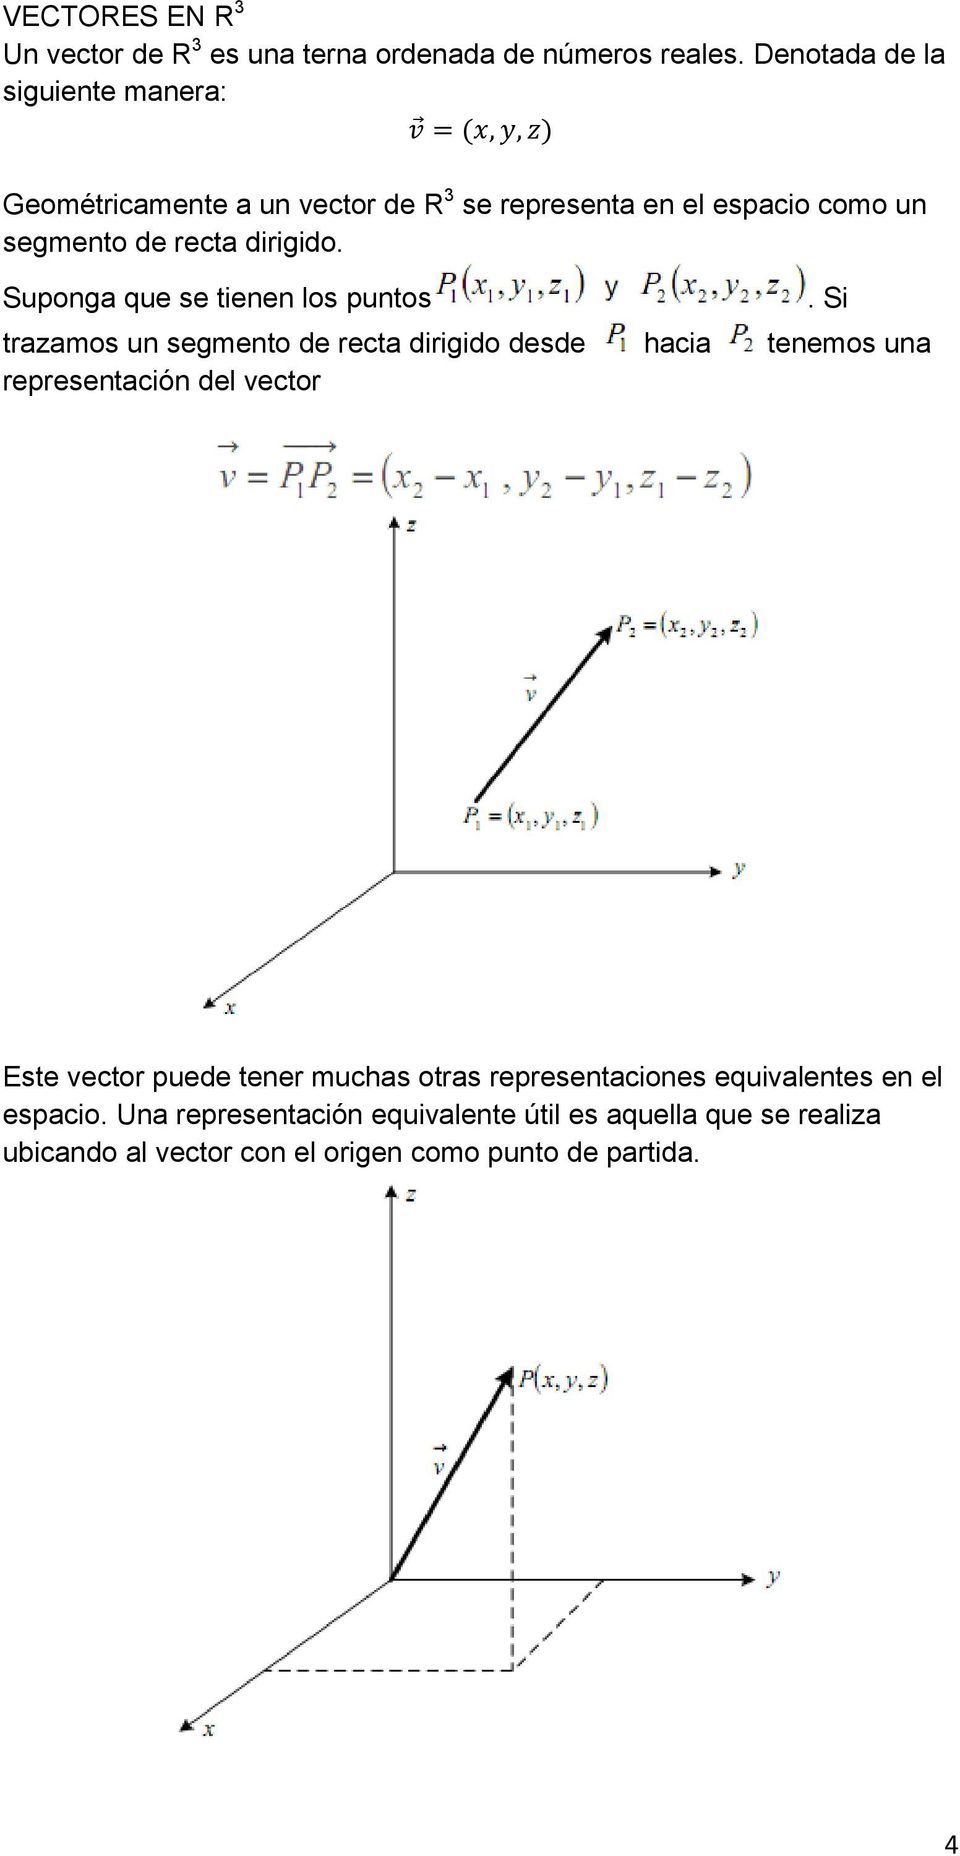 dirigido. Suponga que se tienen los puntos trazamos un segmento de recta dirigido desde hacia tenemos una representación del vector.